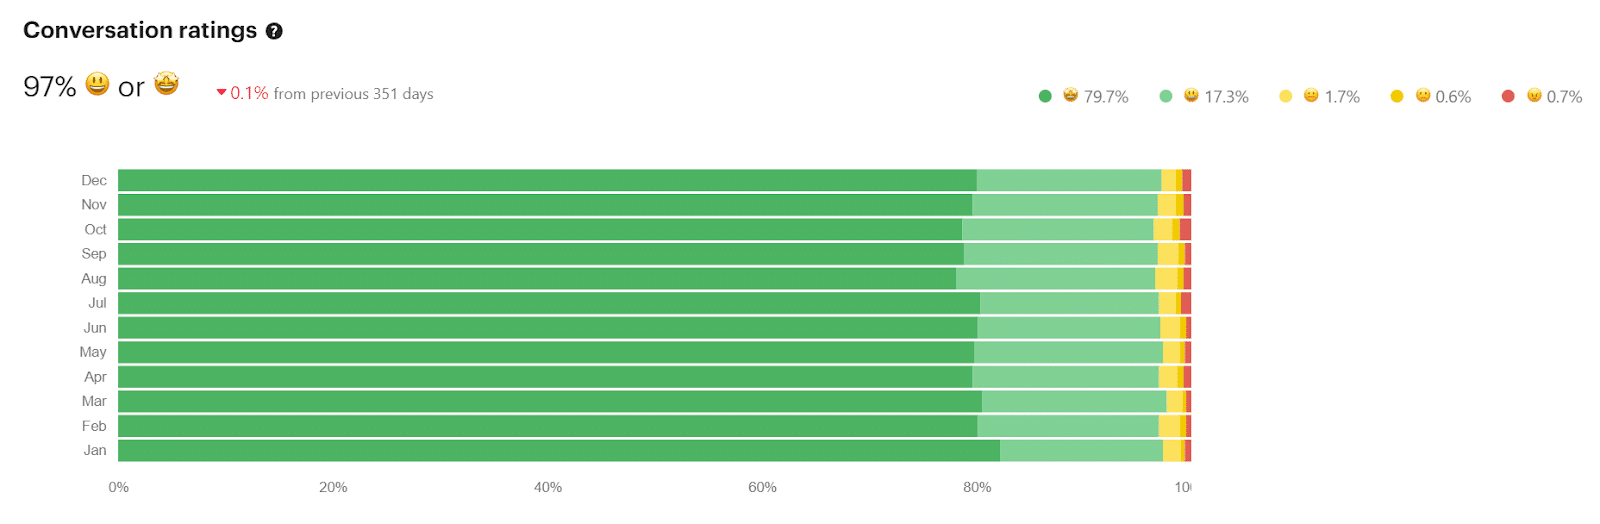 Un grafico a barre orizzontali verdi che mostra le valutazioni di conversazione del 97% di Kinsta per mese nel 2021.